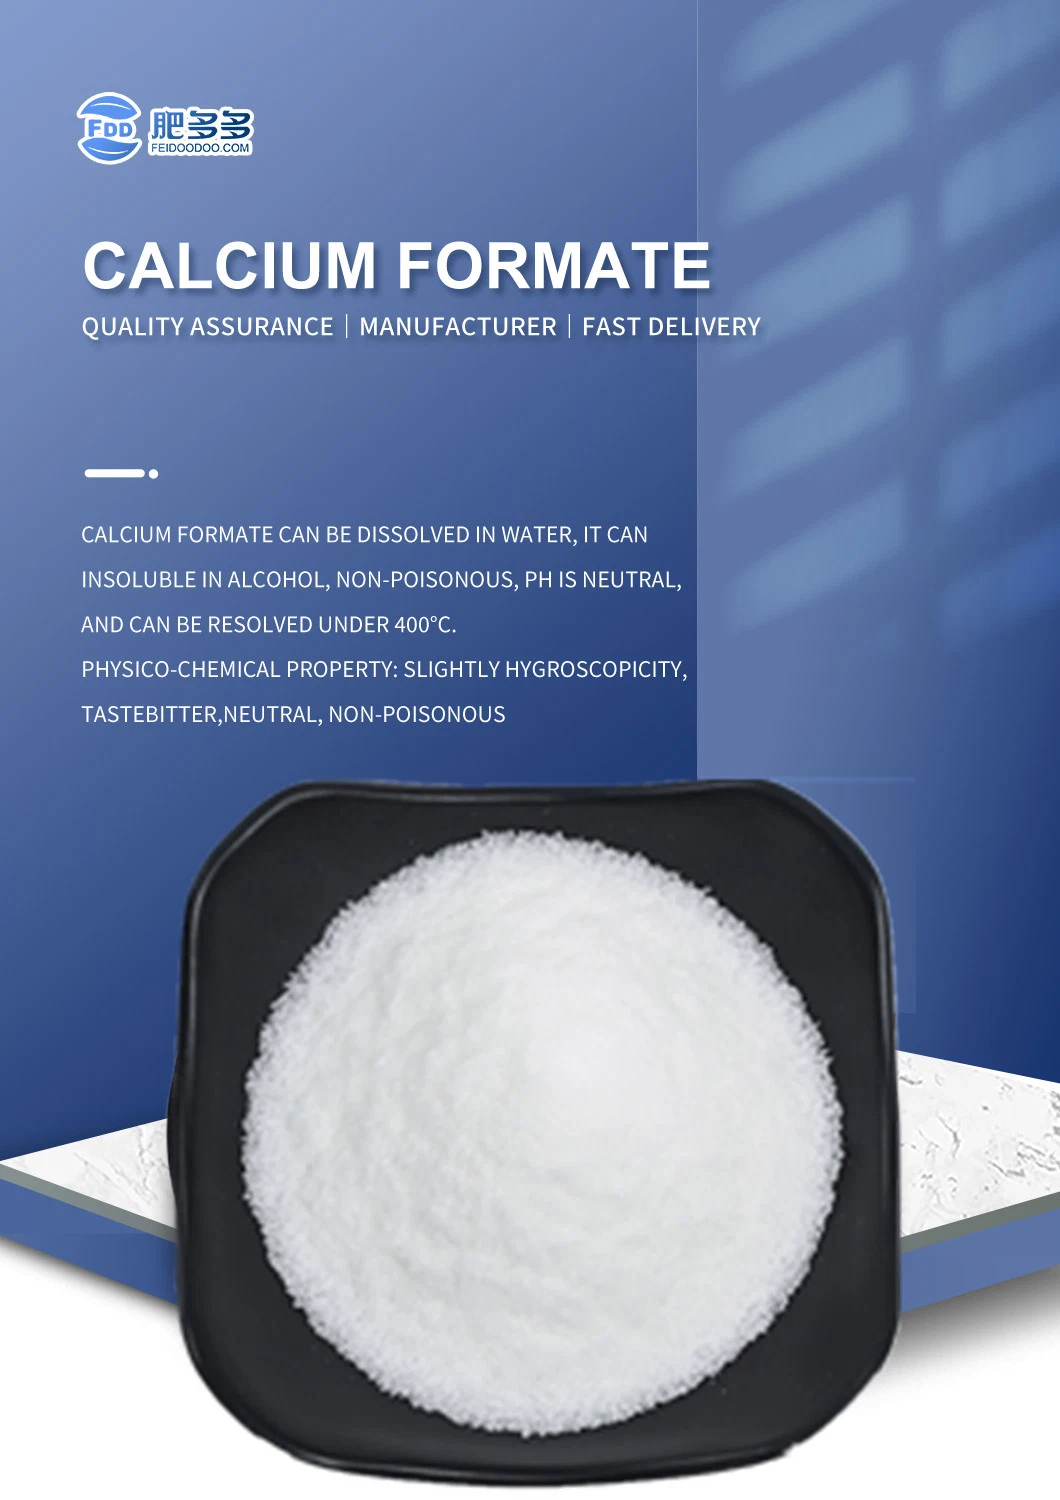 Best Price in Organic Salt HS Code 29151200 CAS 544-17-2 Calcium Formate